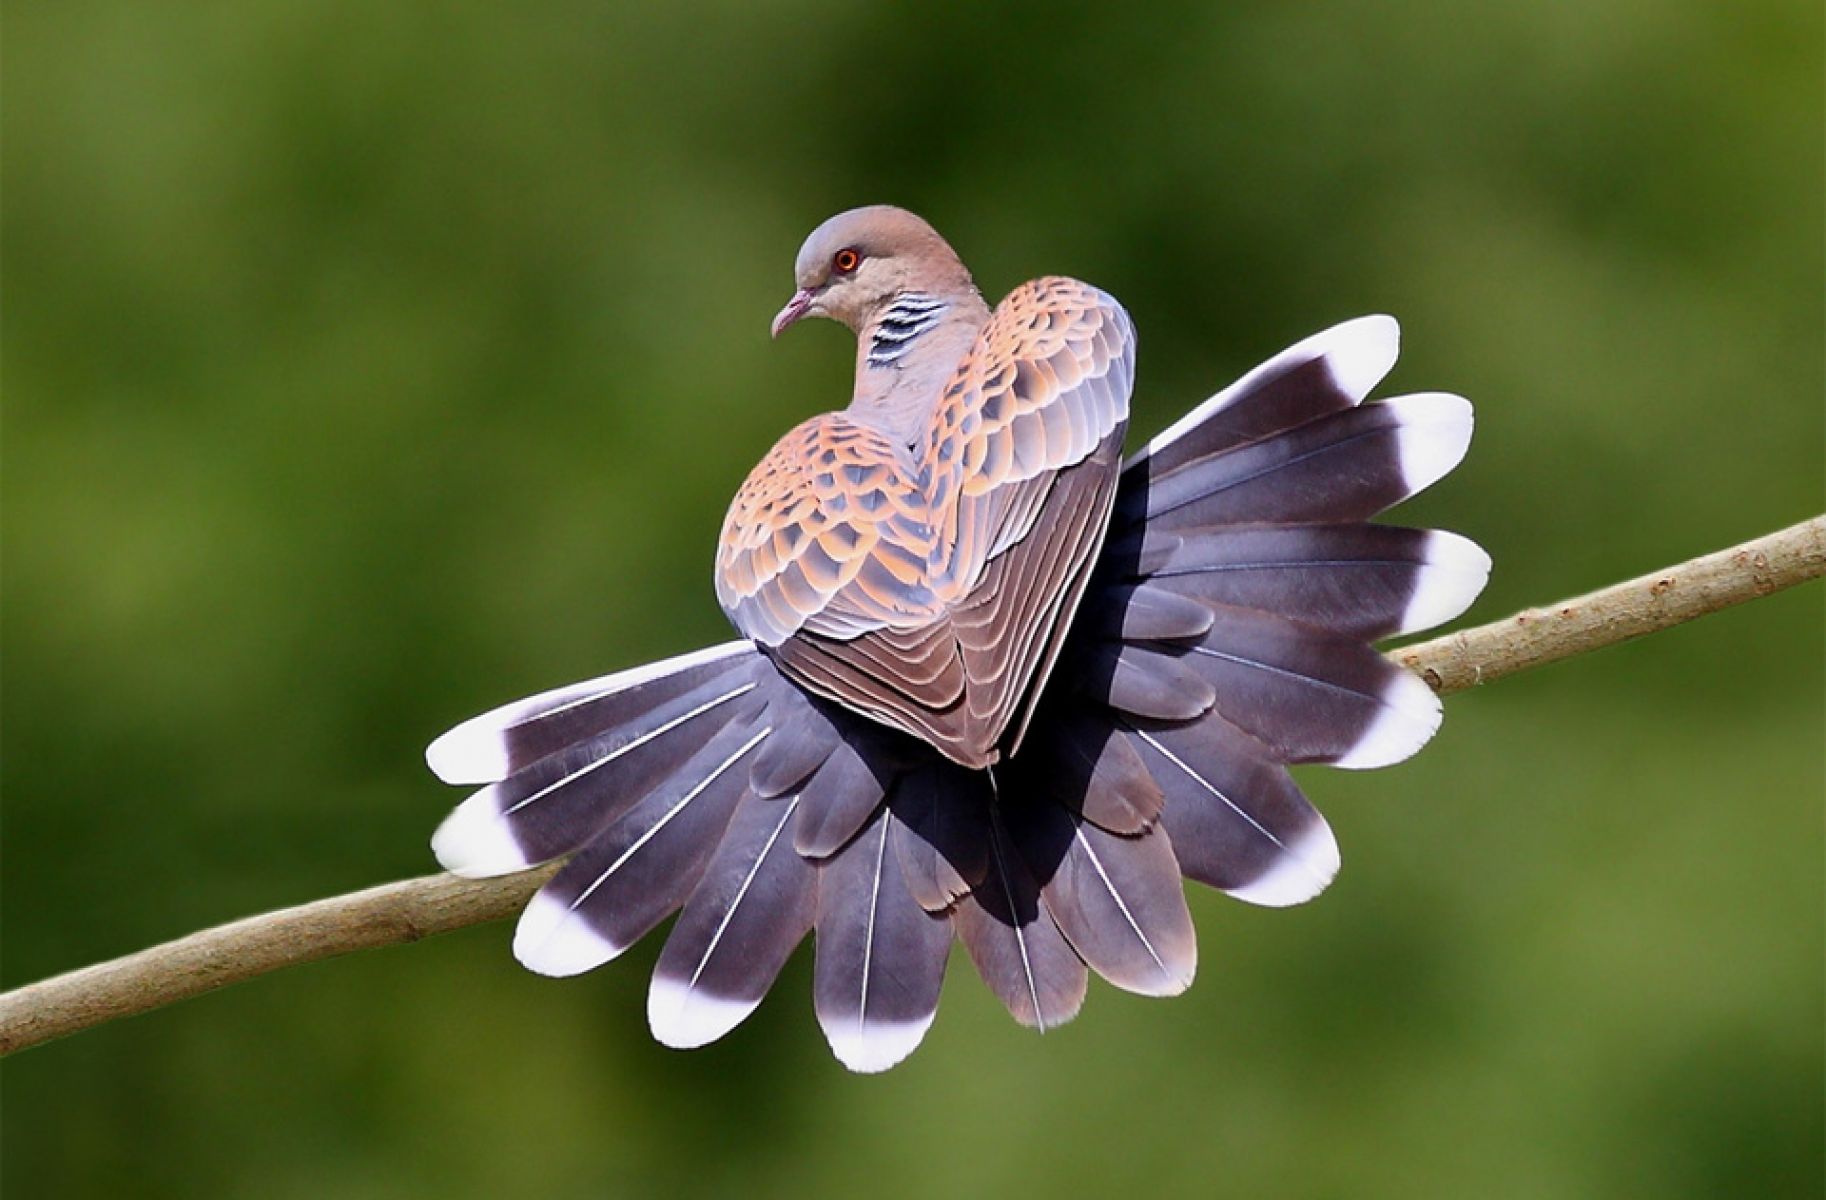 Heart Shaped Pigeon Wallpaper - Birds In Heart Shape - HD Wallpaper 